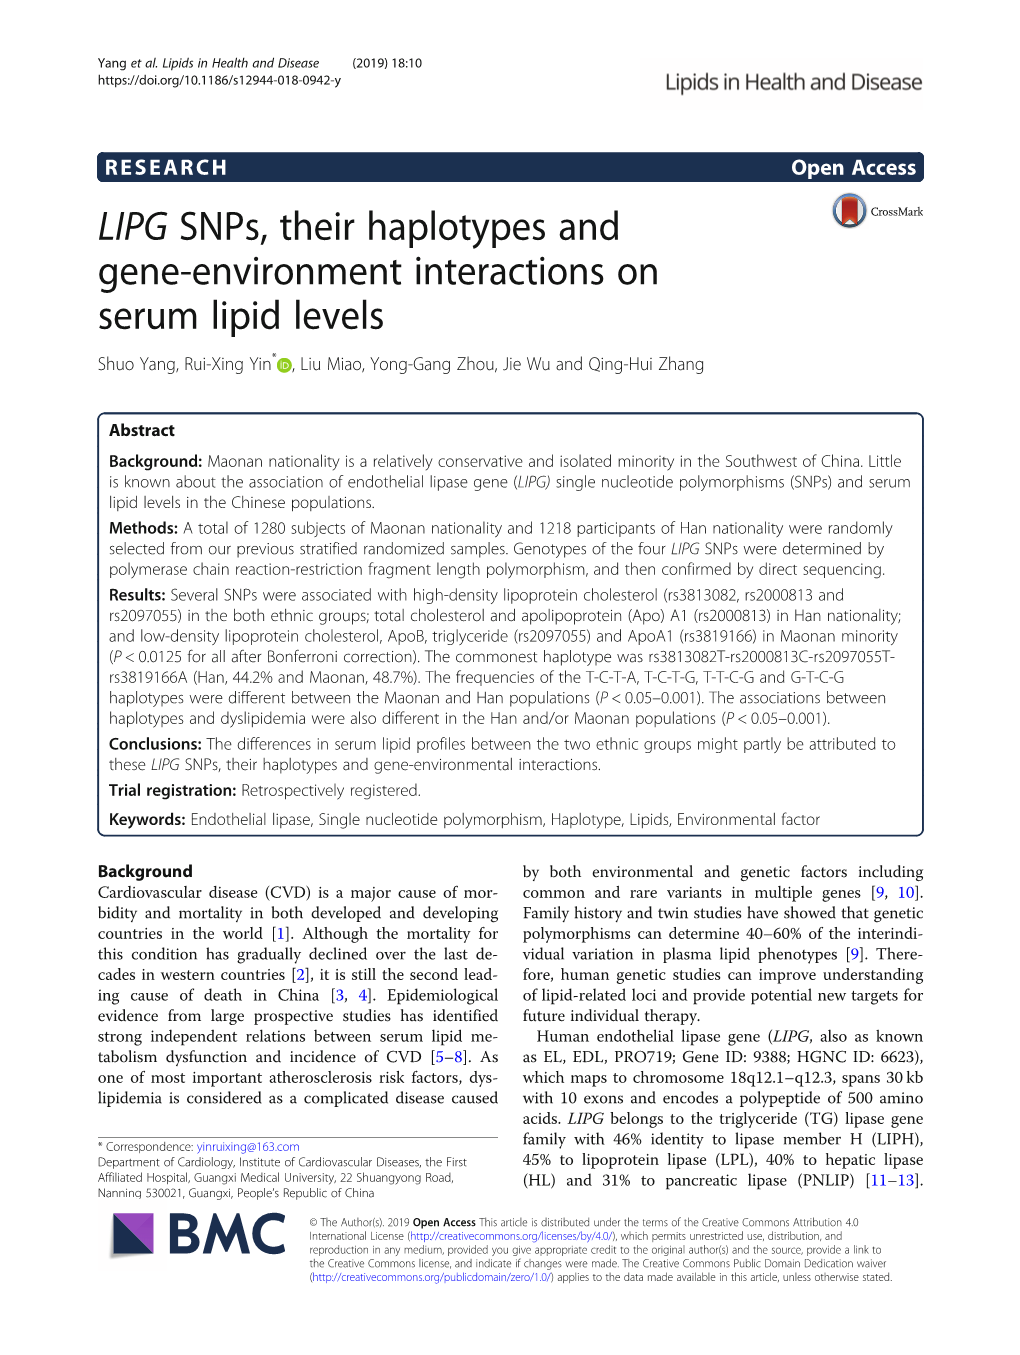 LIPG Snps, Their Haplotypes and Gene-Environment Interactions on Serum Lipid Levels Shuo Yang, Rui-Xing Yin* , Liu Miao, Yong-Gang Zhou, Jie Wu and Qing-Hui Zhang